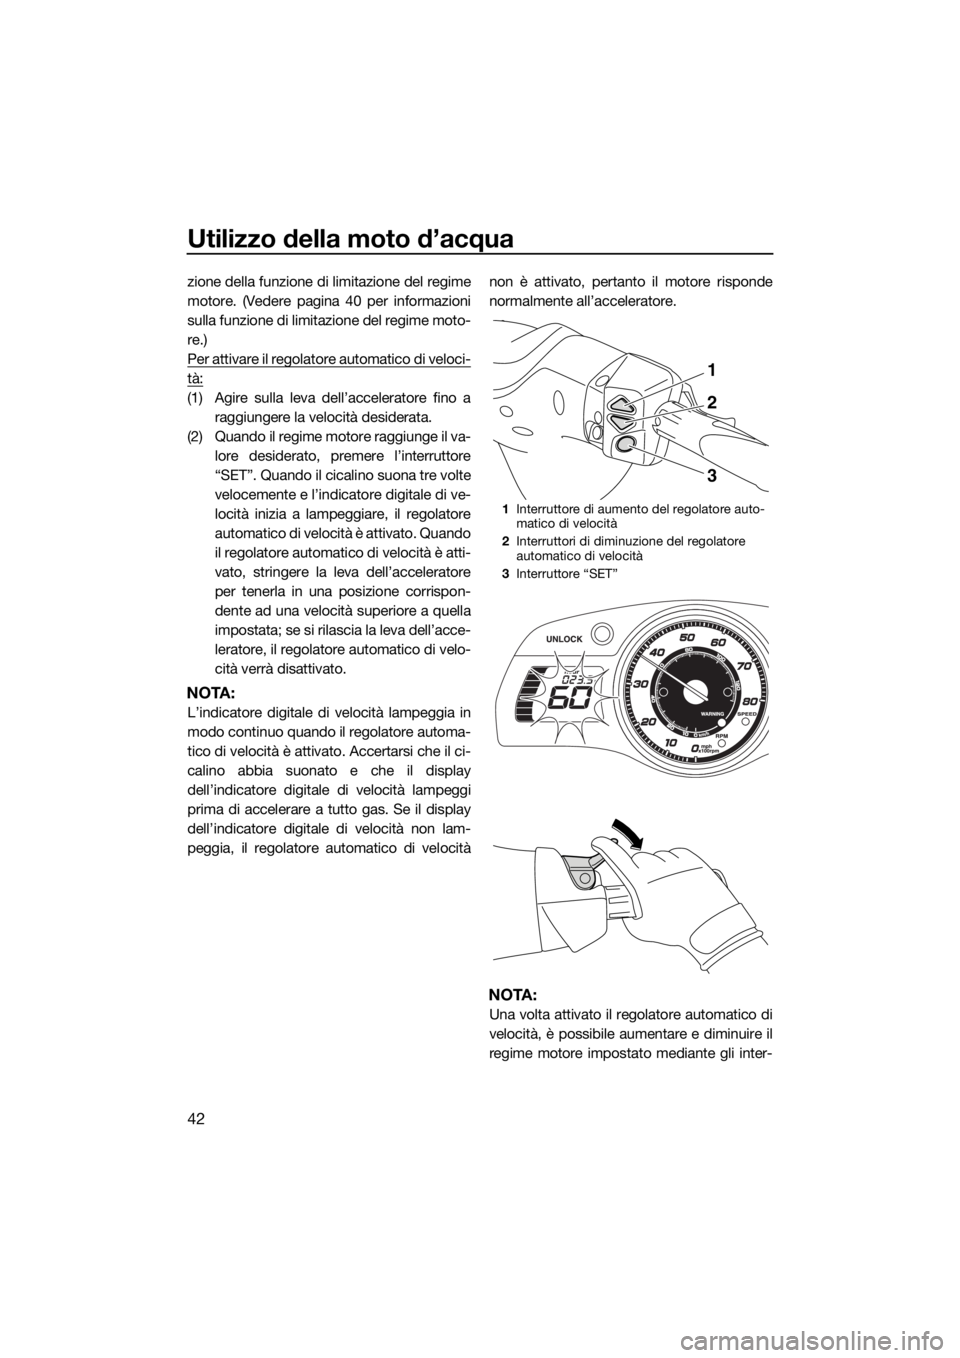 YAMAHA FX SVHO 2016  Manuale duso (in Italian) Utilizzo della moto d’acqua
42
zione della funzione di limitazione del regime
motore. (Vedere pagina 40 per informazioni
sulla funzione di limitazione del regime moto-
re.)
Per attivare il regolator